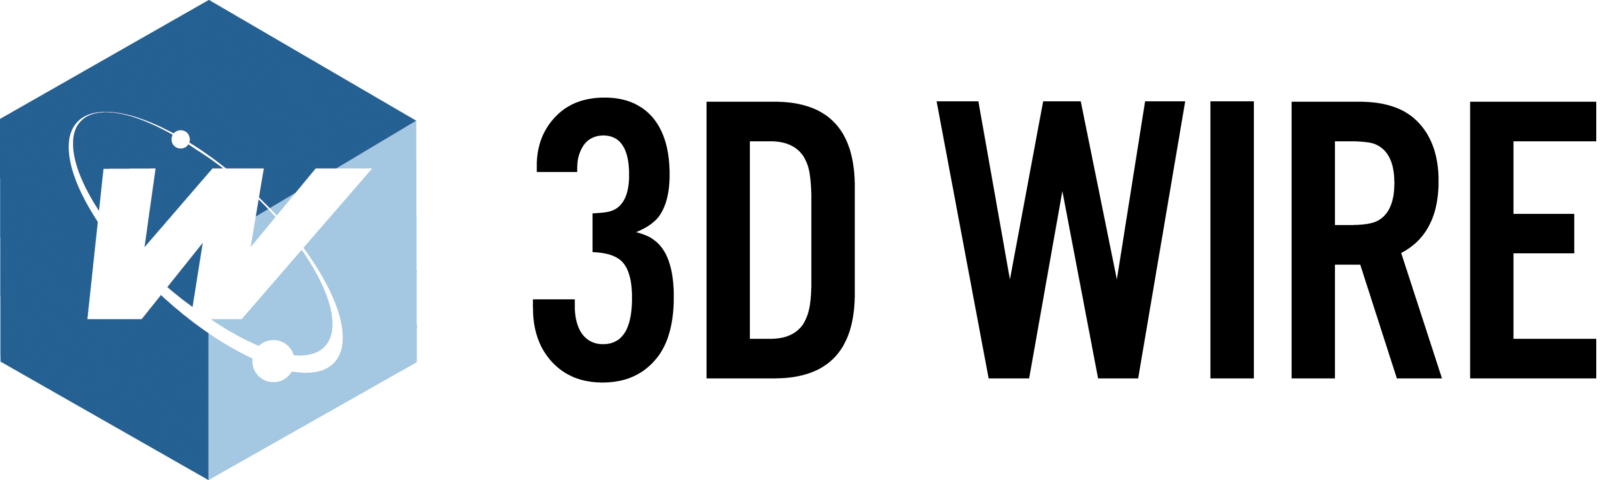 logotipo_3dwire_2015_nuevo_color_black